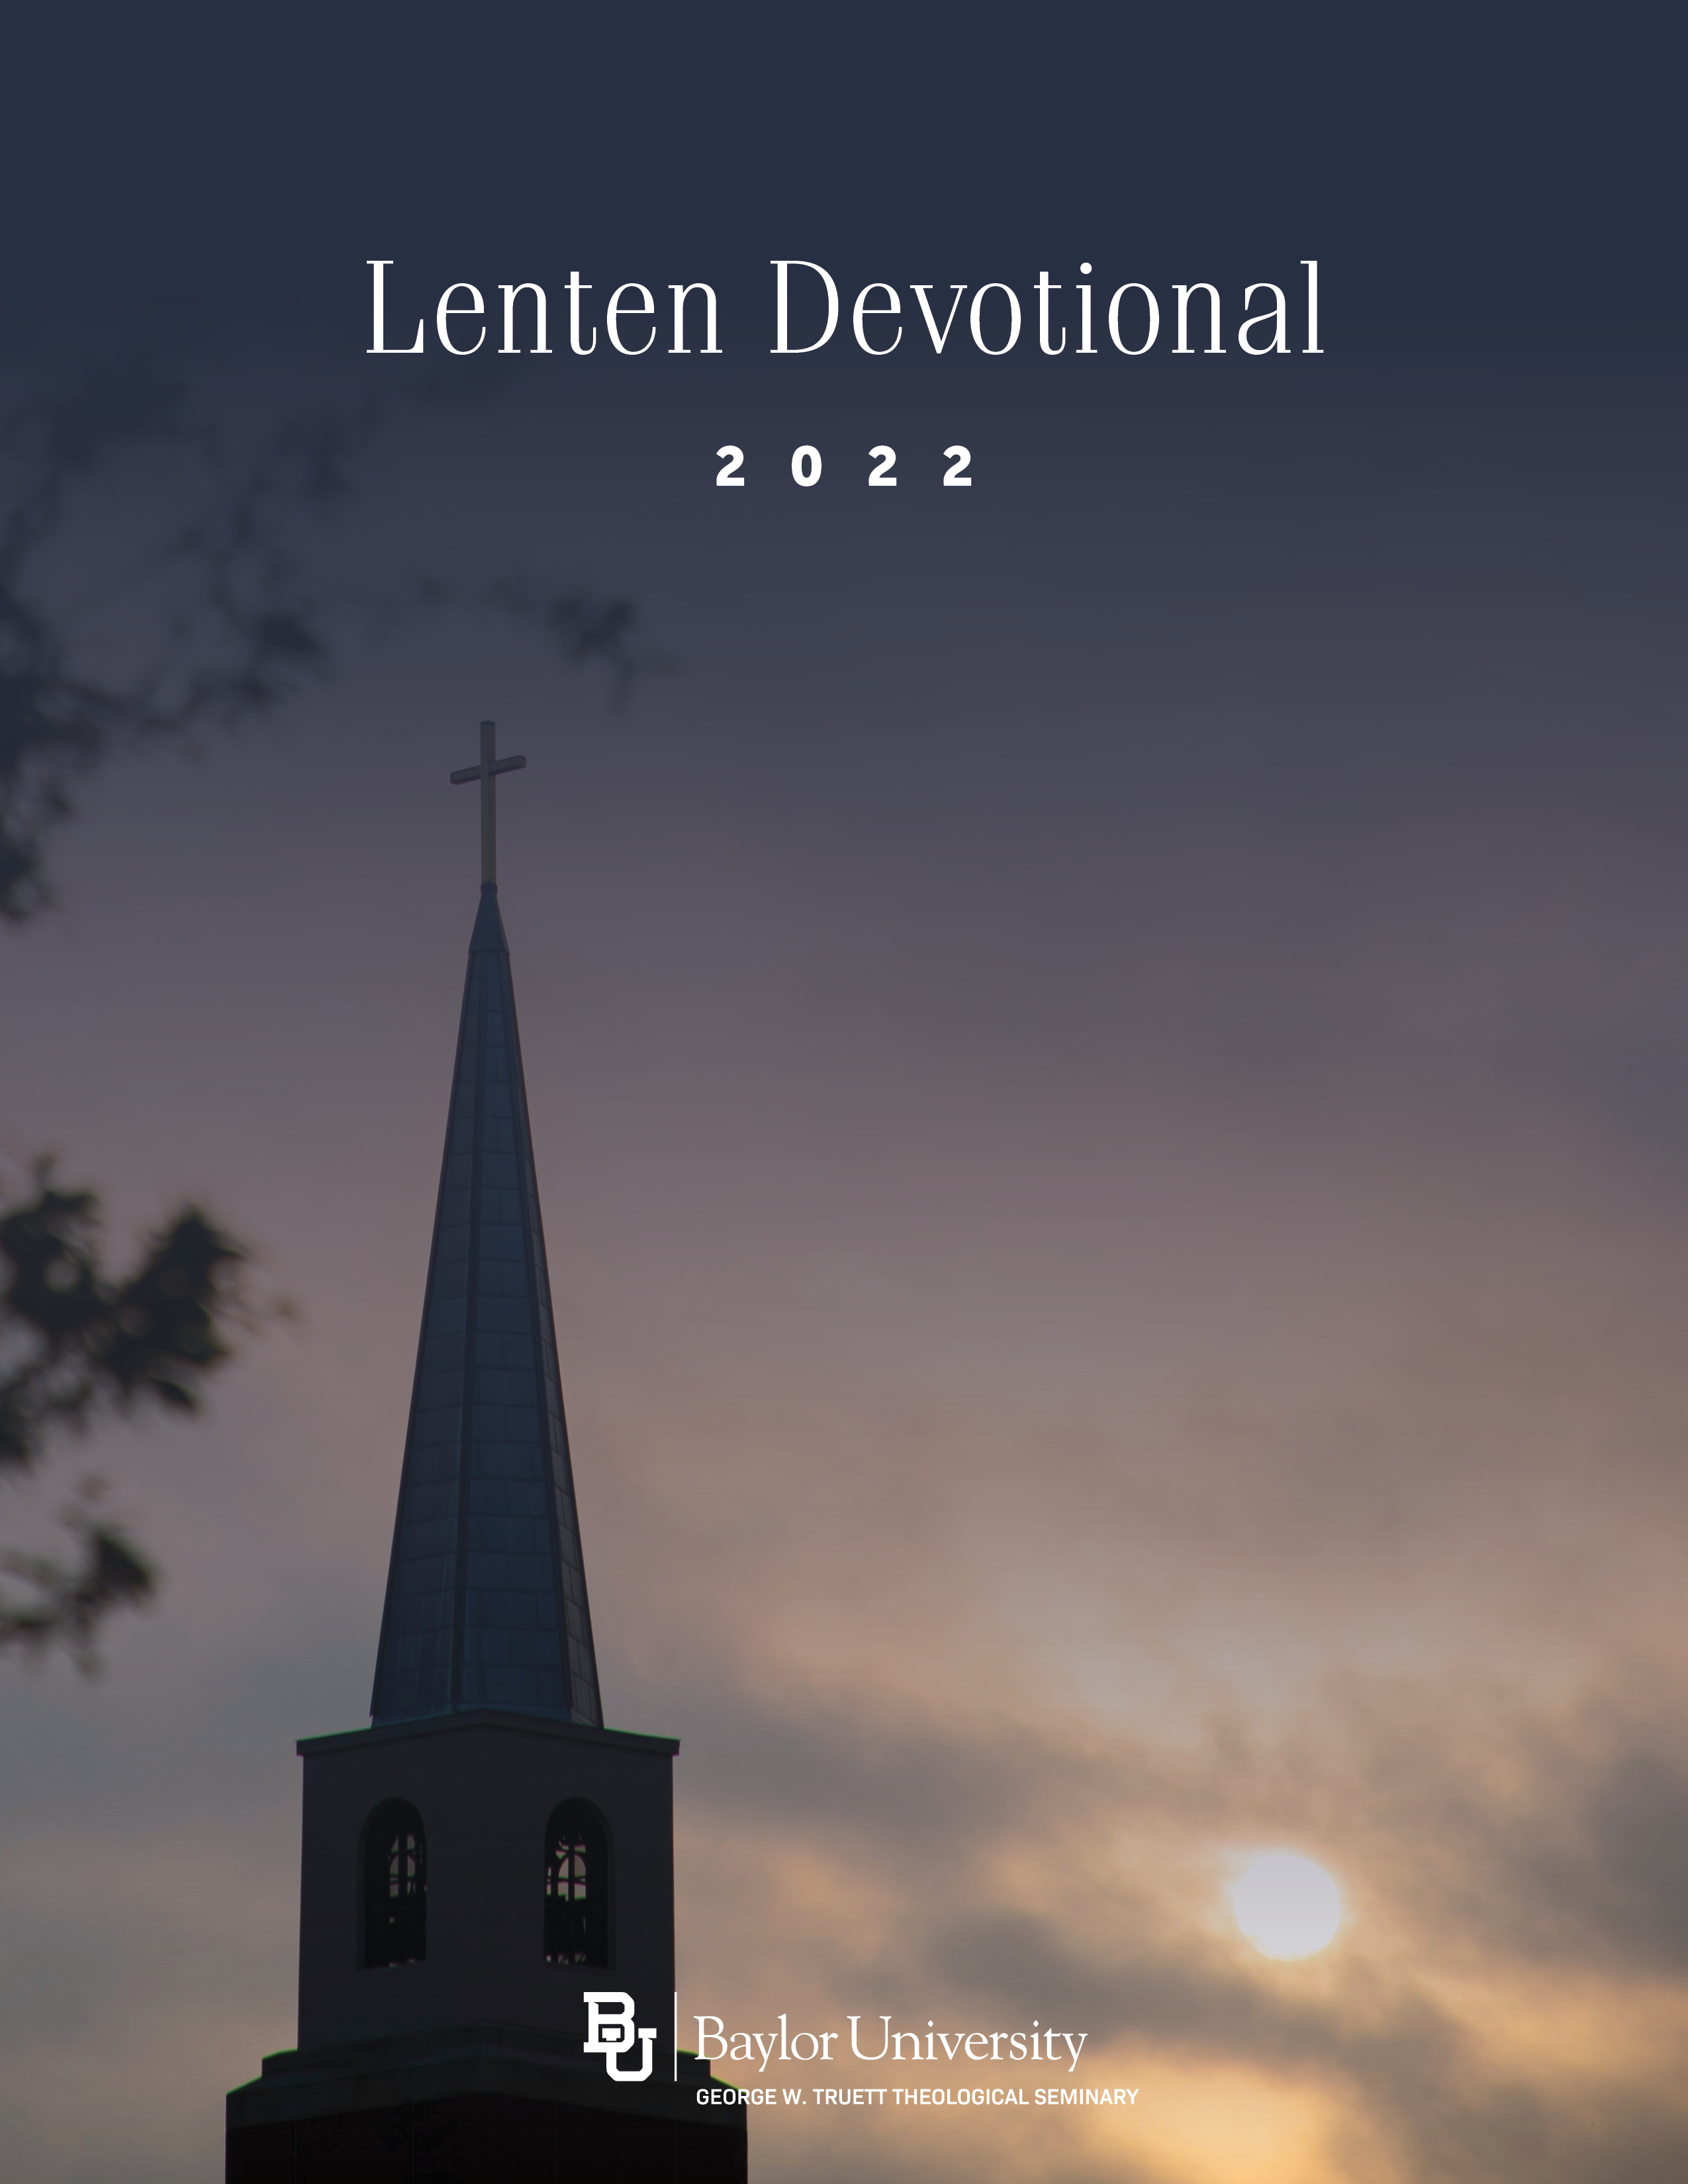 Lenten Devotional Guide 2022